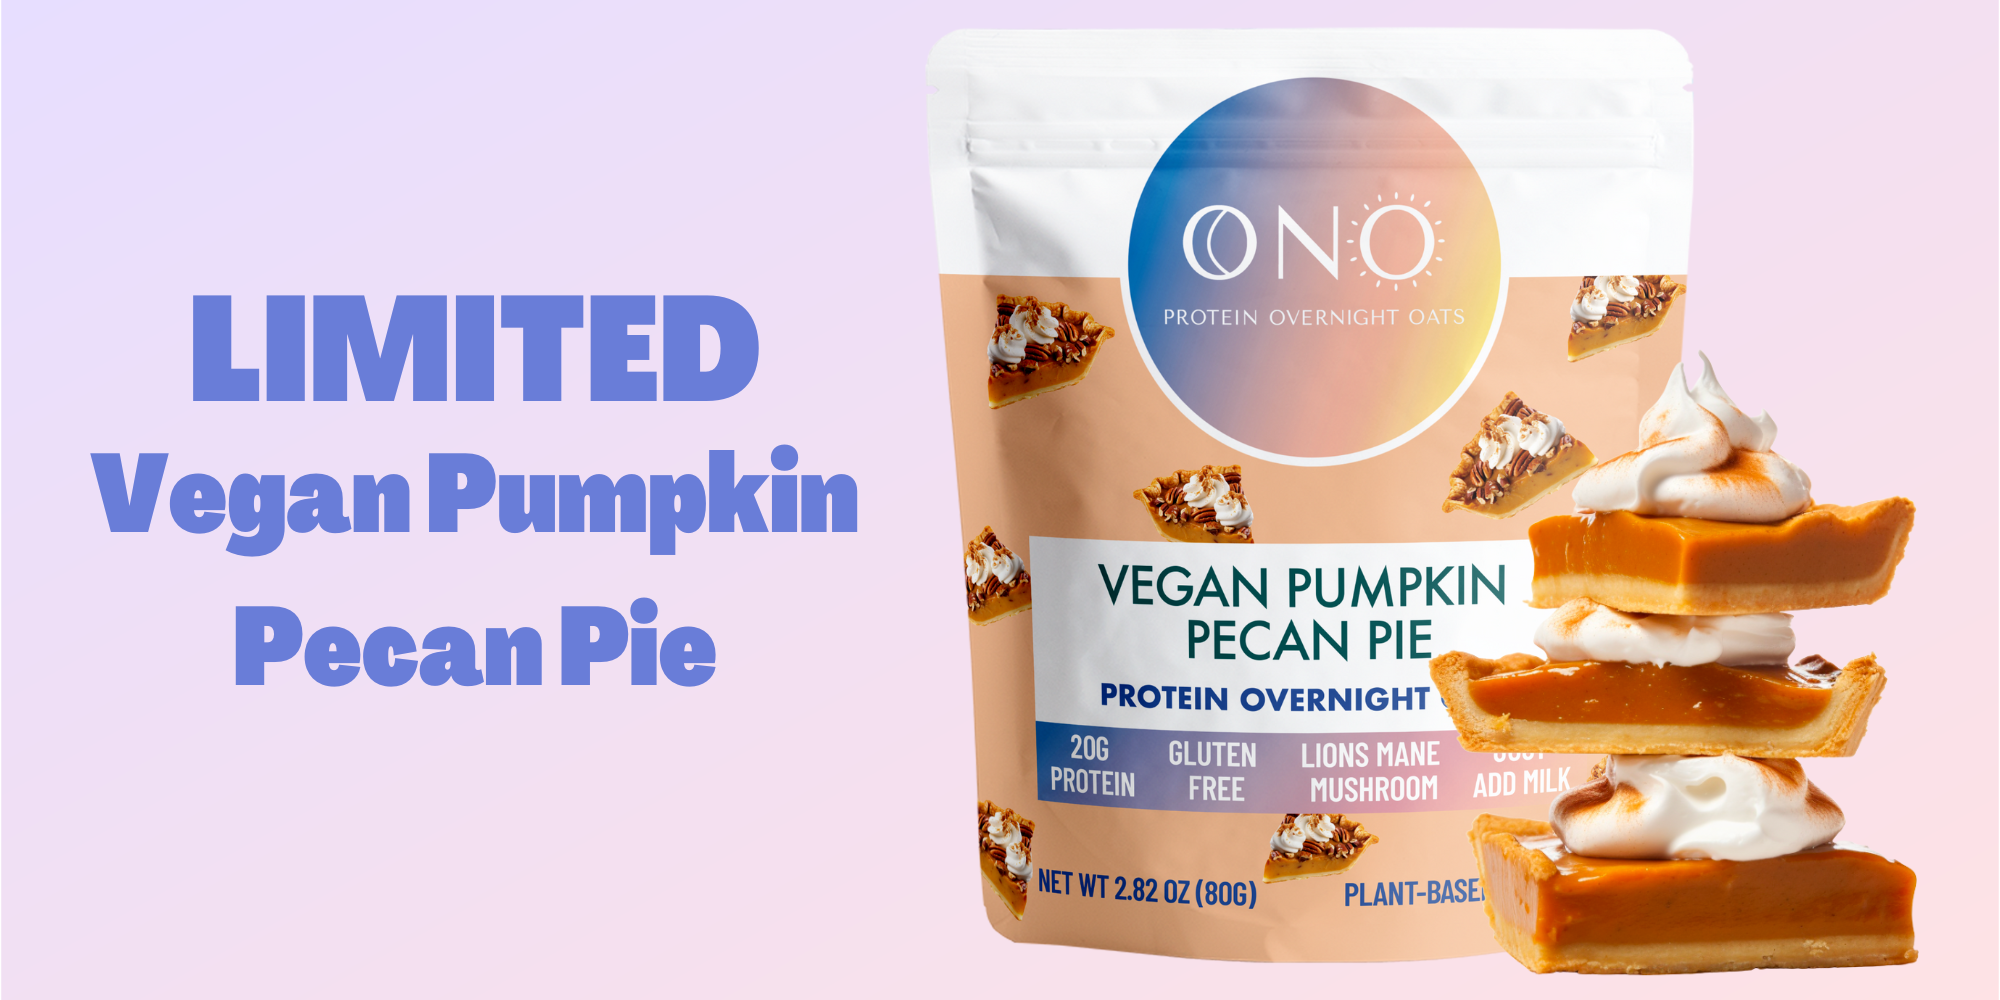 Limited Vegan Pumpkin Pecan Pie